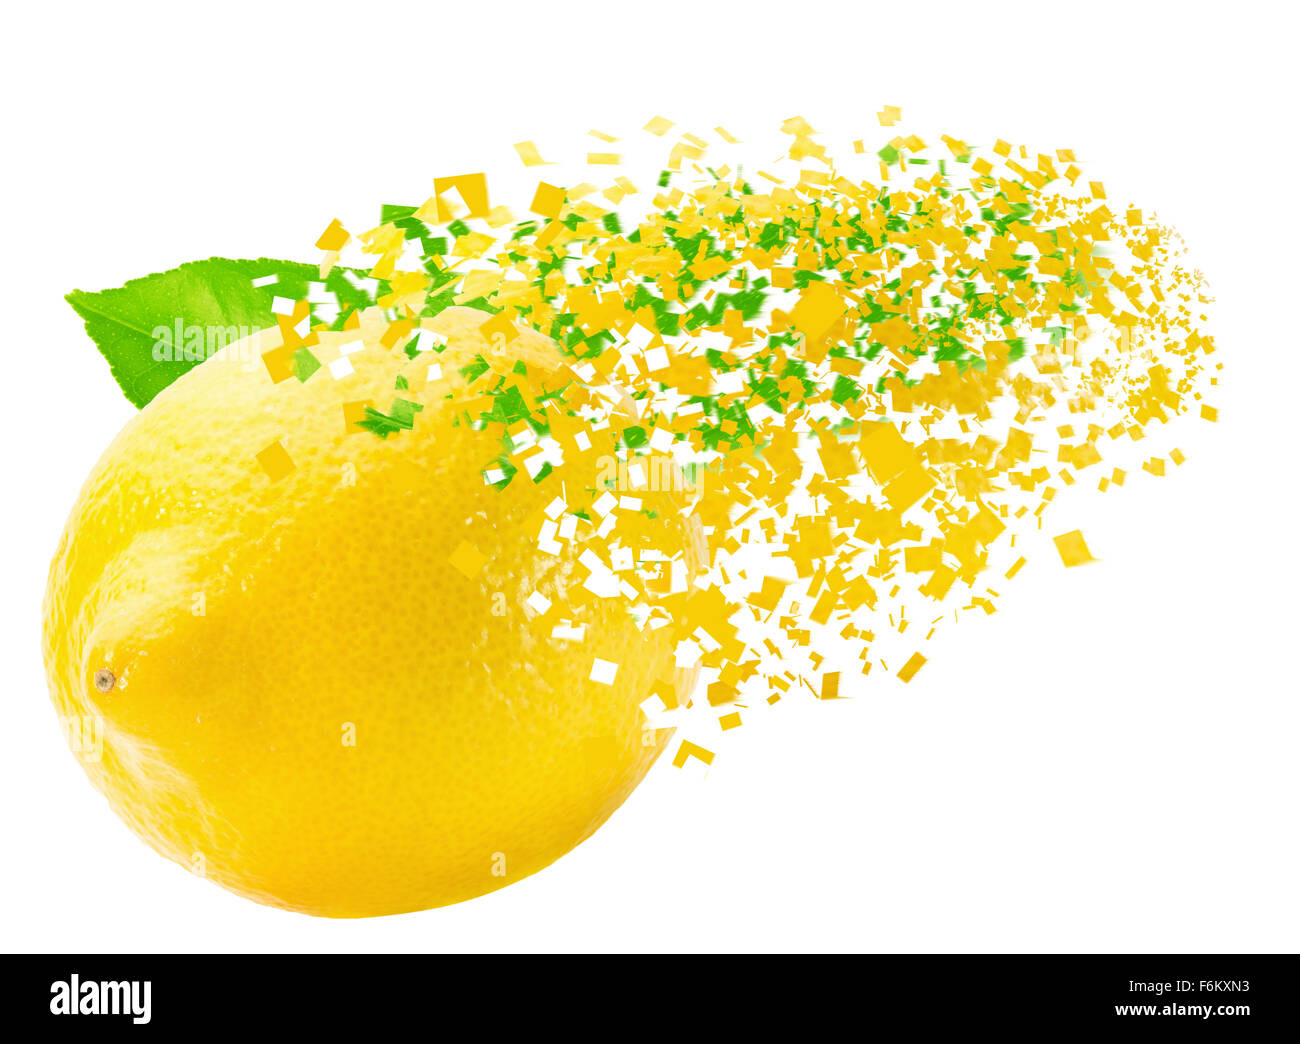 bursting lemon isolated on the white background. Stock Photo